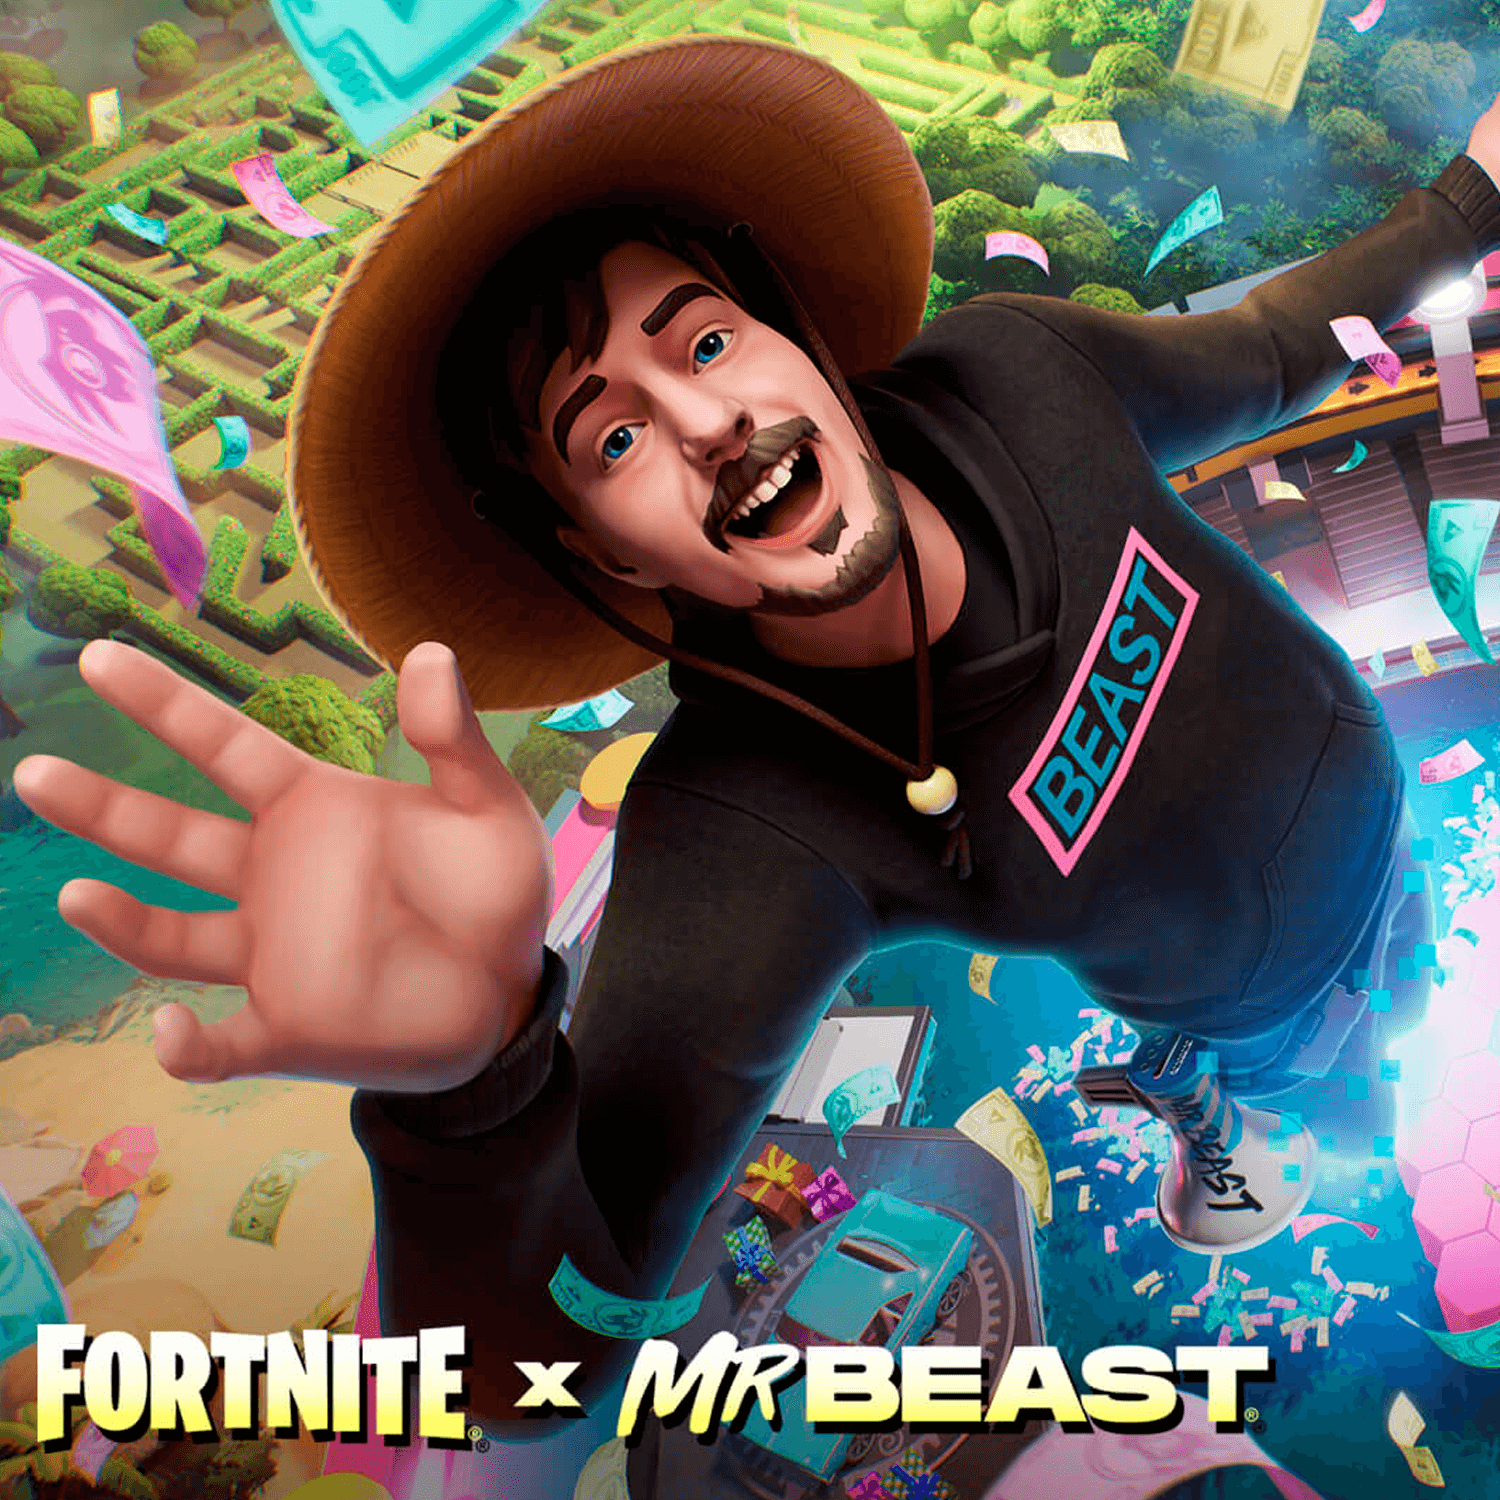 ¡Mr.Beast llegará a Fortnite y regalará 1 millón de dólares!